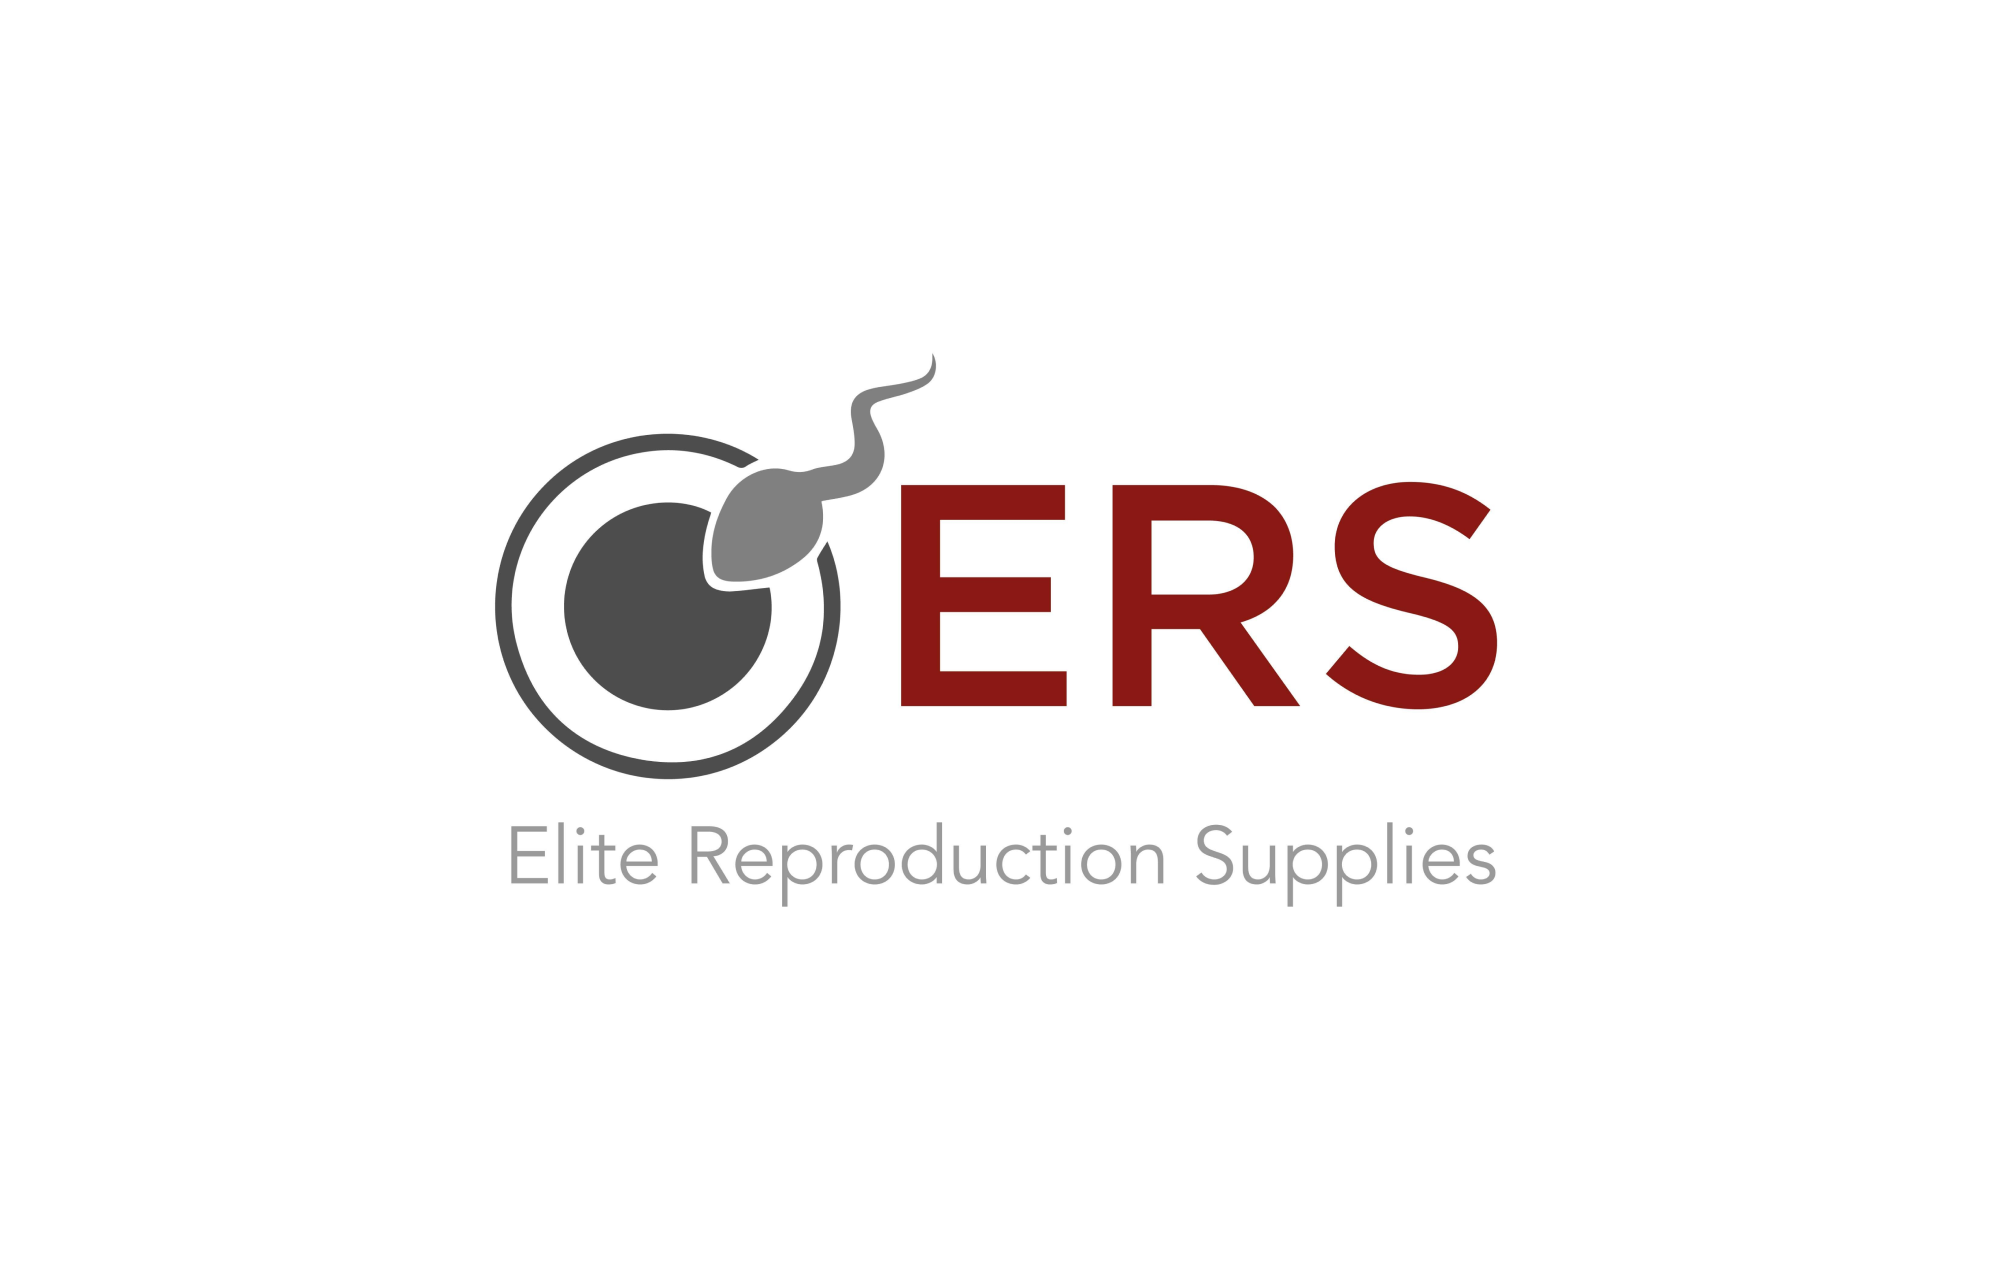 Elite Reproduction Supplies